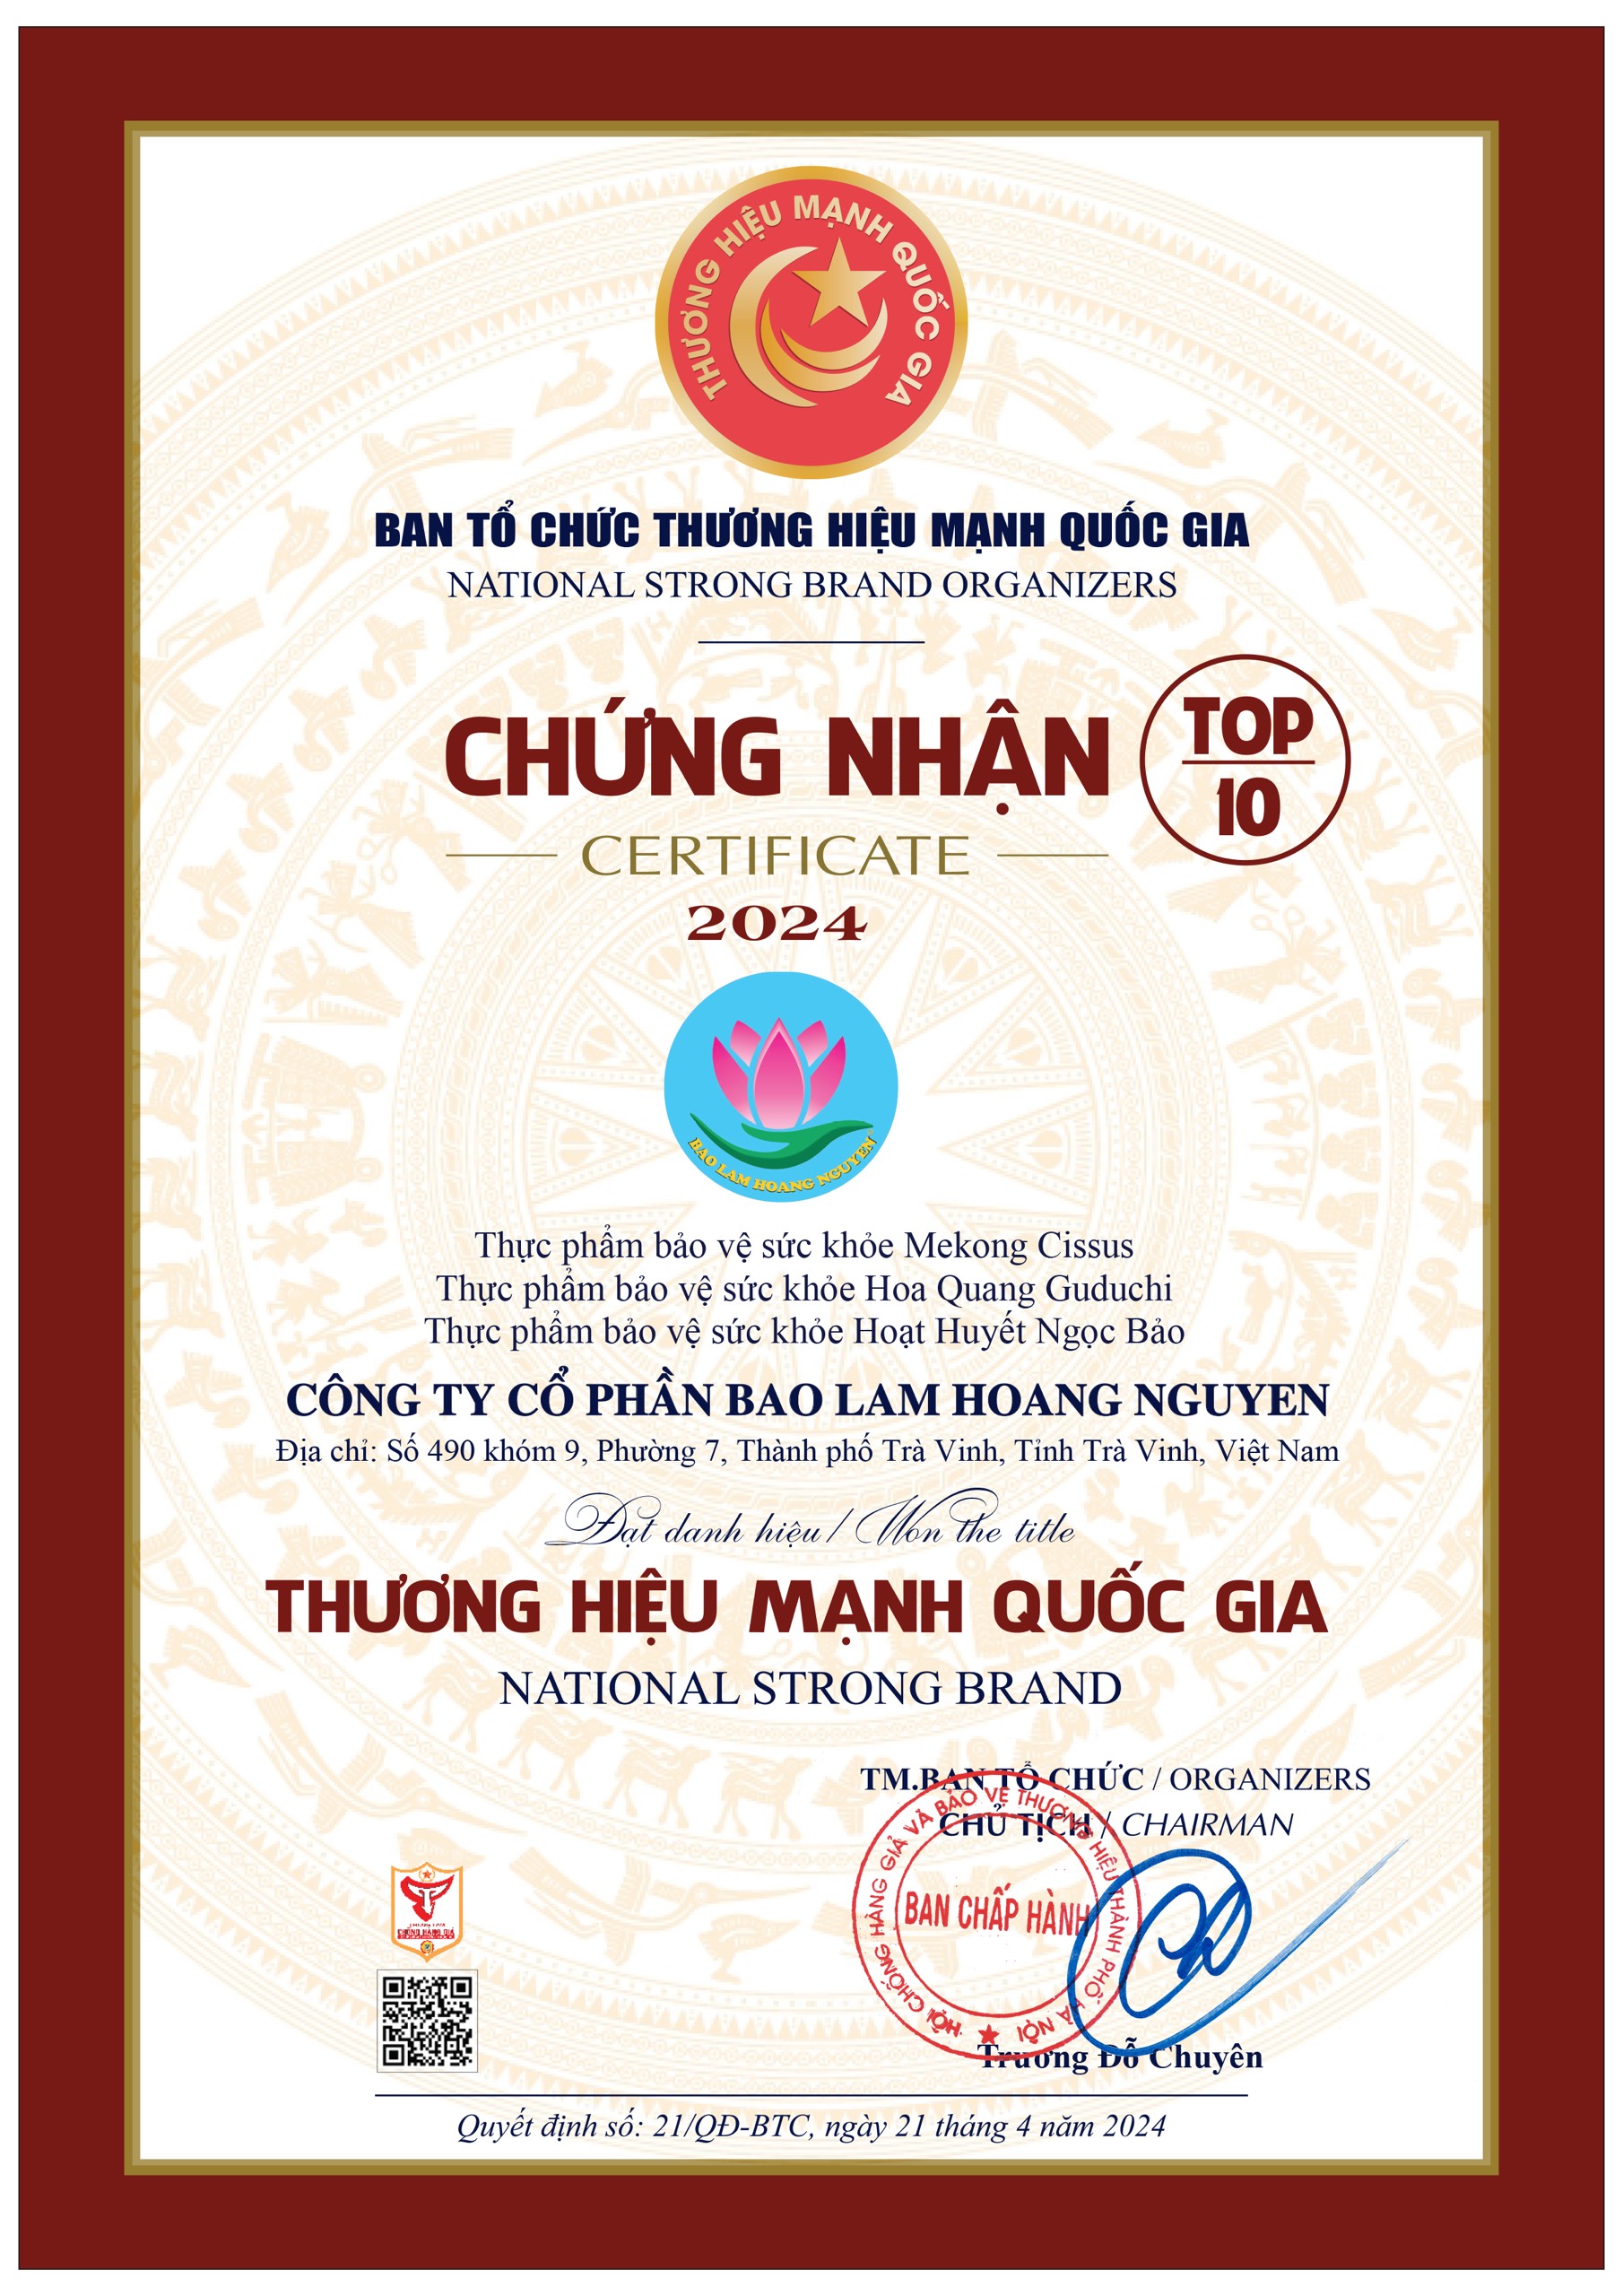 Công ty CP Bao Lam Hoang Nguyen - một trong những doanh nghiệp xuất sắc đạt danh hiệu “Top 10 – Thương hiệu mạnh quốc gia” năm 2024